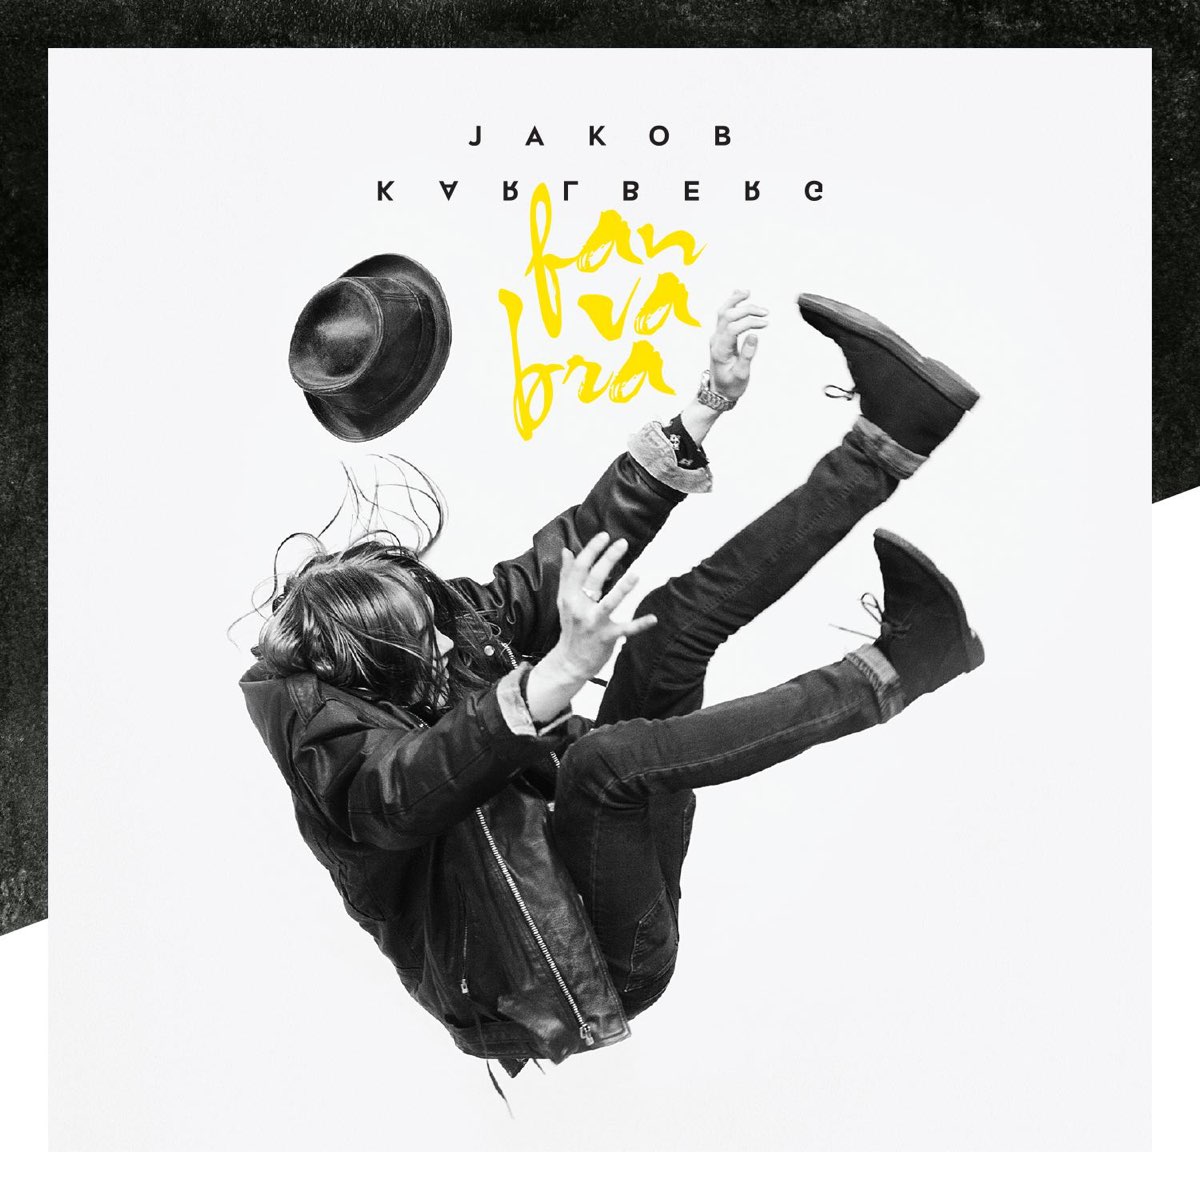 Fan va bra - Single by Jakob Karlberg on Apple Music